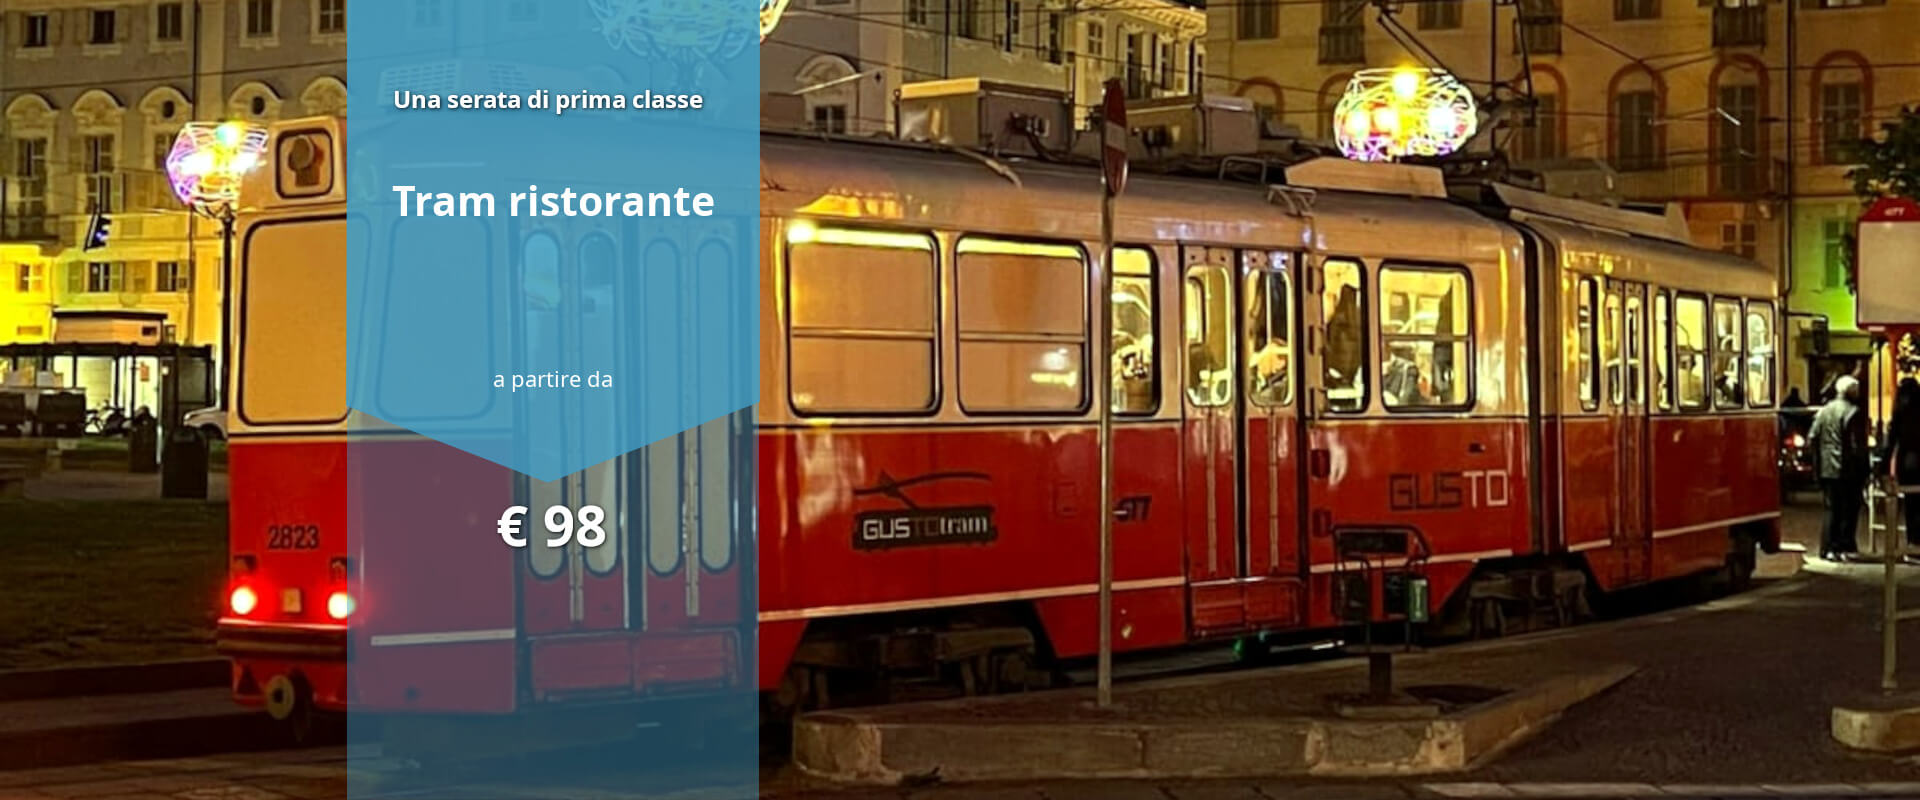 Cena tram Torino cene in movimento